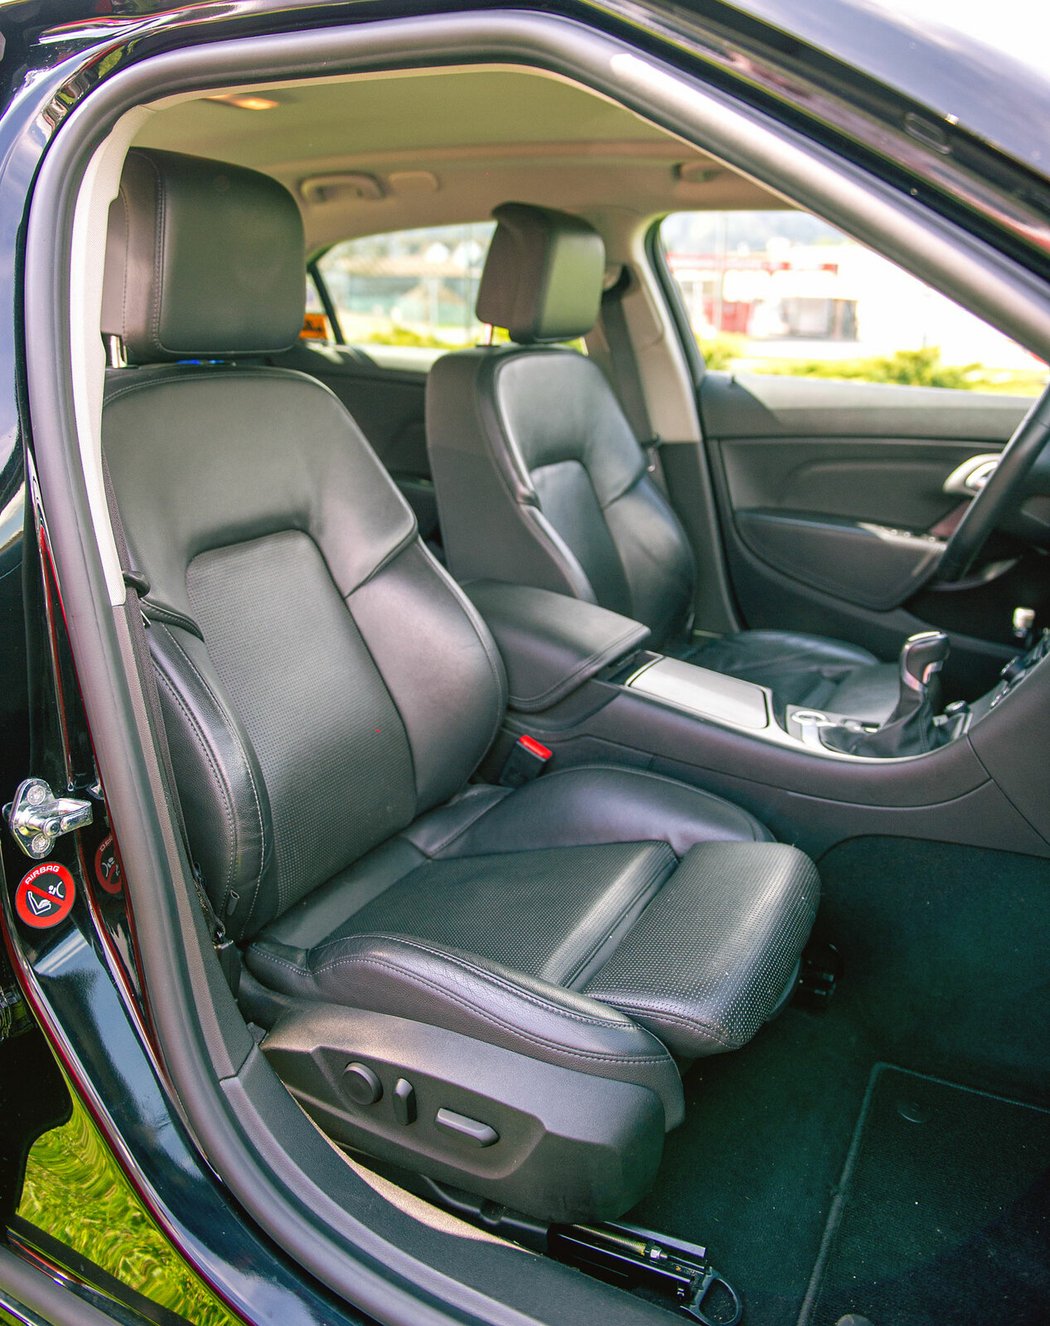 Vrcholná verze předních sedadel modelu 9-5 nabízela možnost elektrického seřizování, vyhřívání i odvětrávání